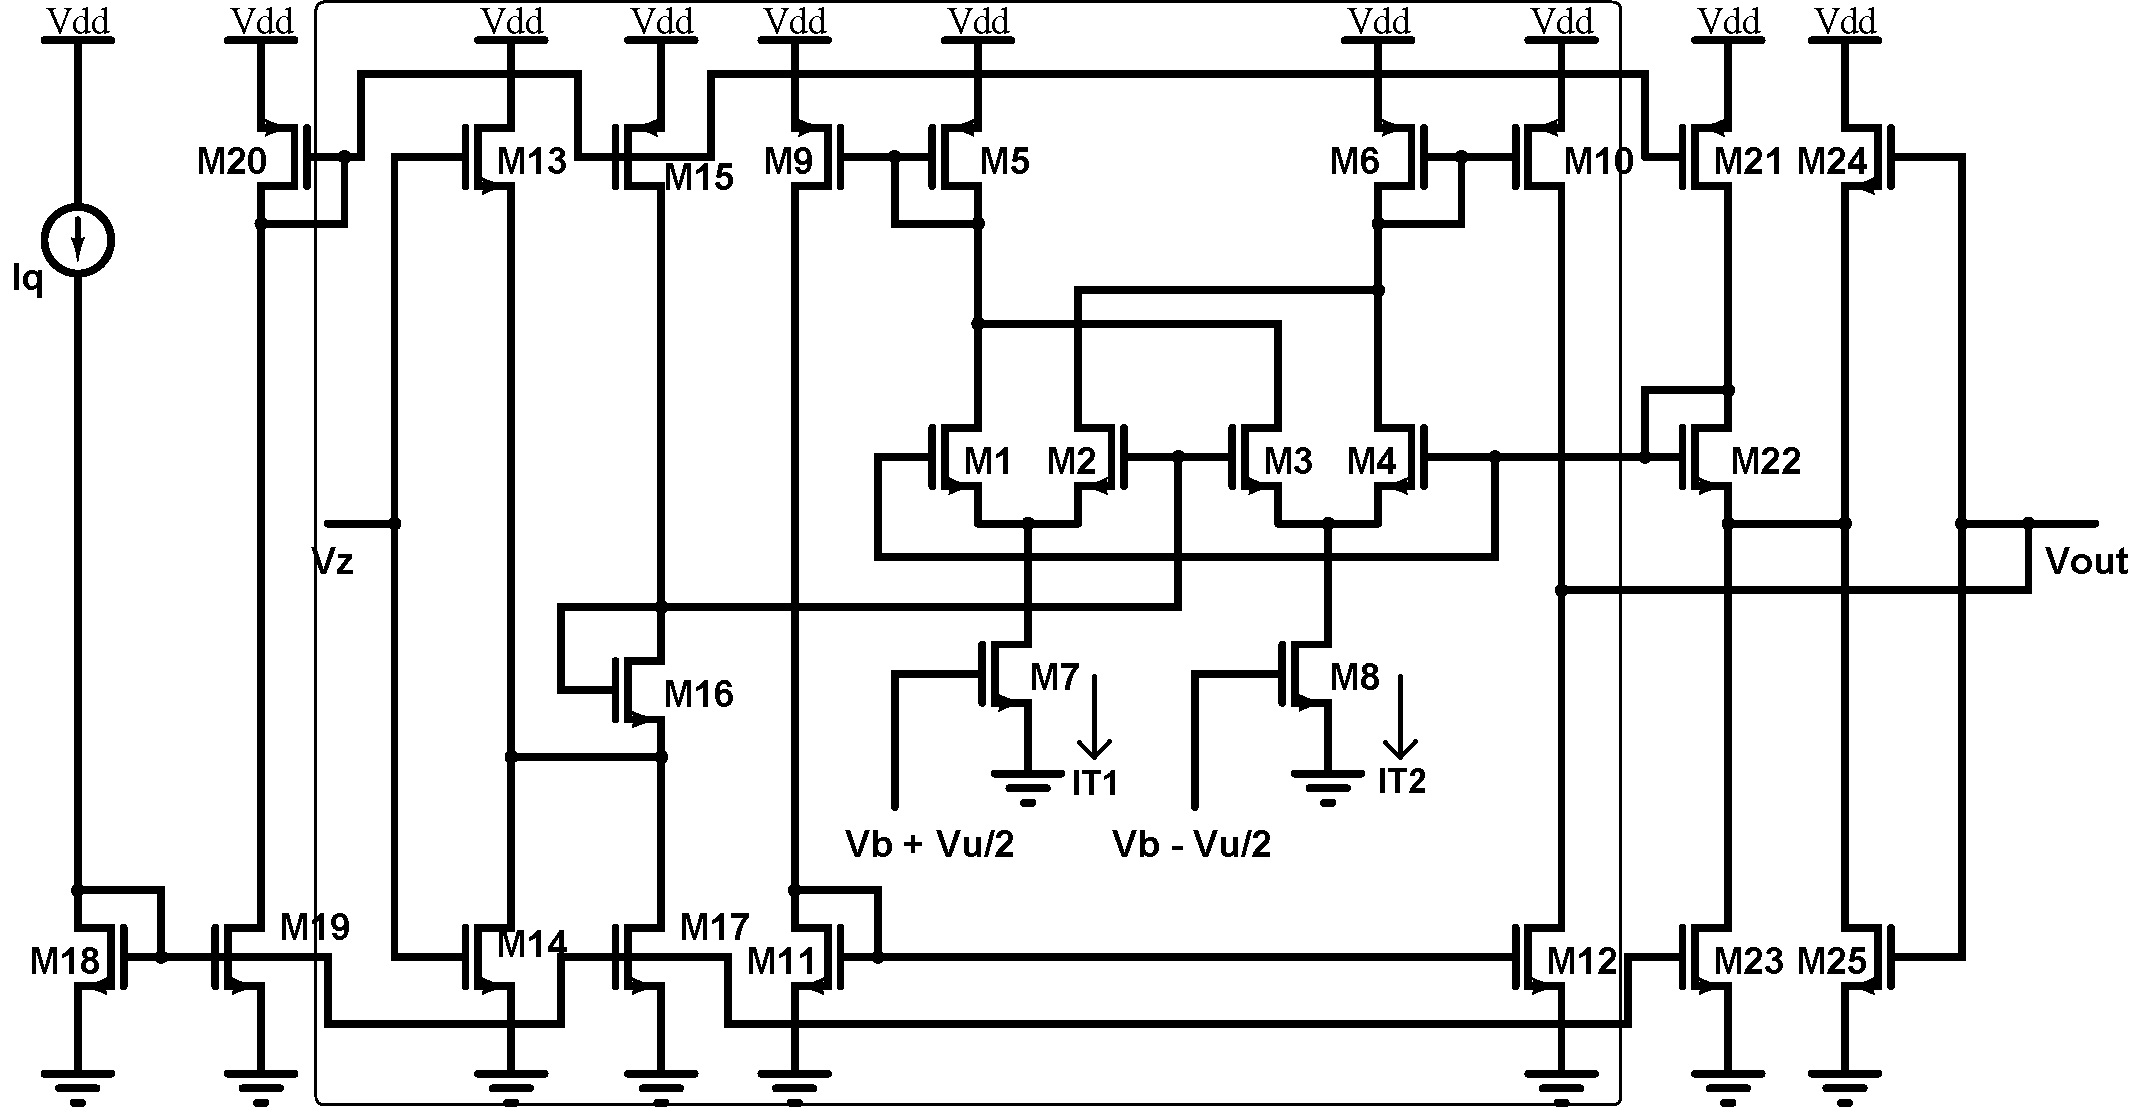 Defuzzifier circuit